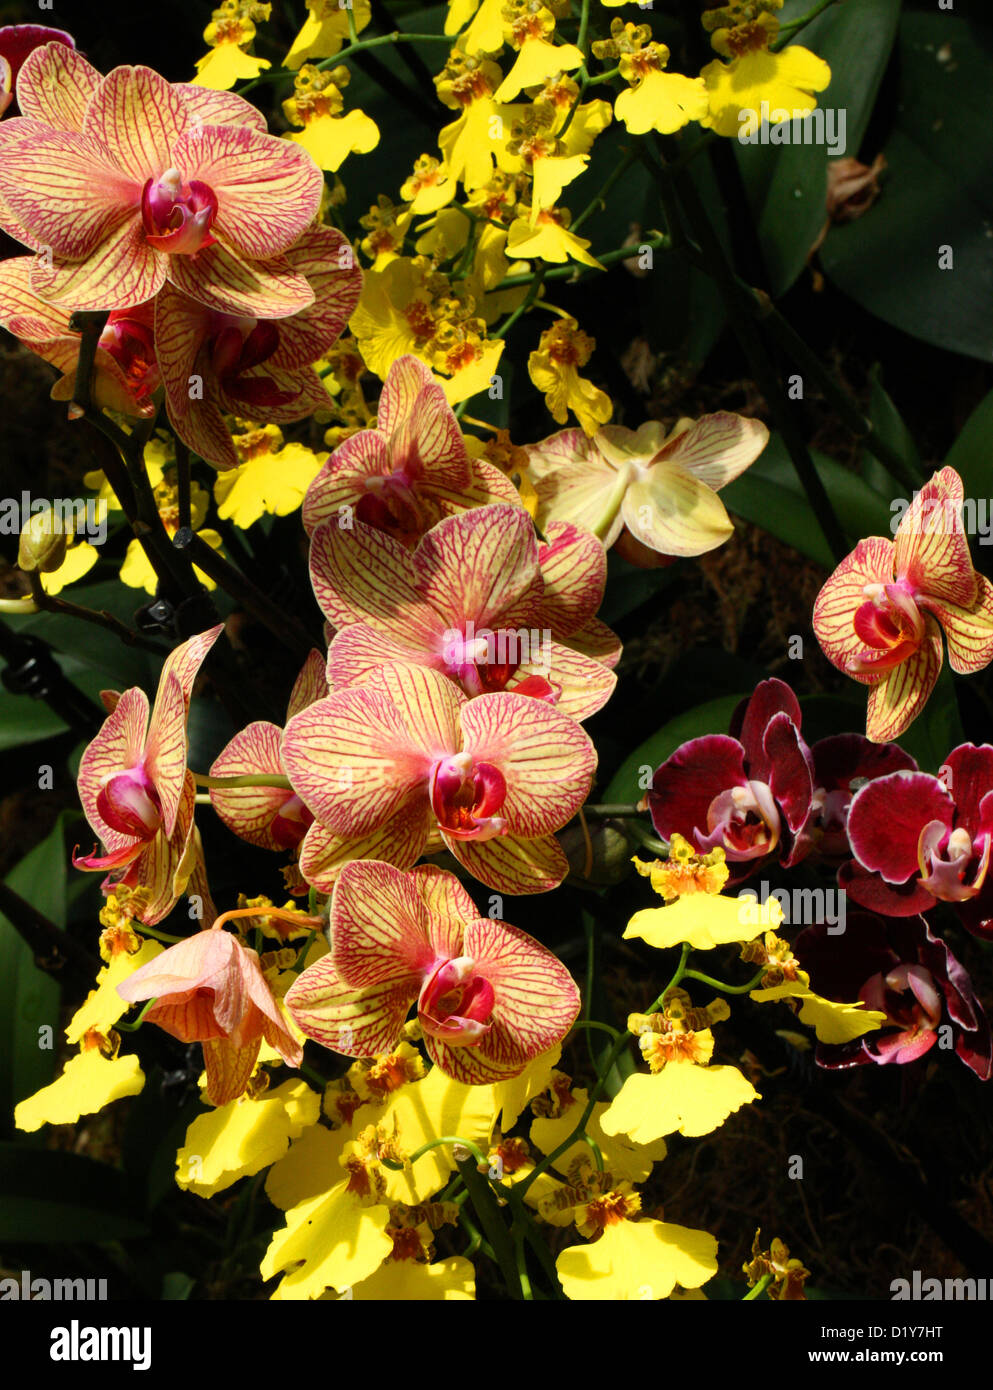 Orange Moth Orchid ibridi, Phalaenopsis sp., Orchidaceae. Originariamente dall'Asia. Golden Shower Orchidee Oncidium ibrido. Foto Stock